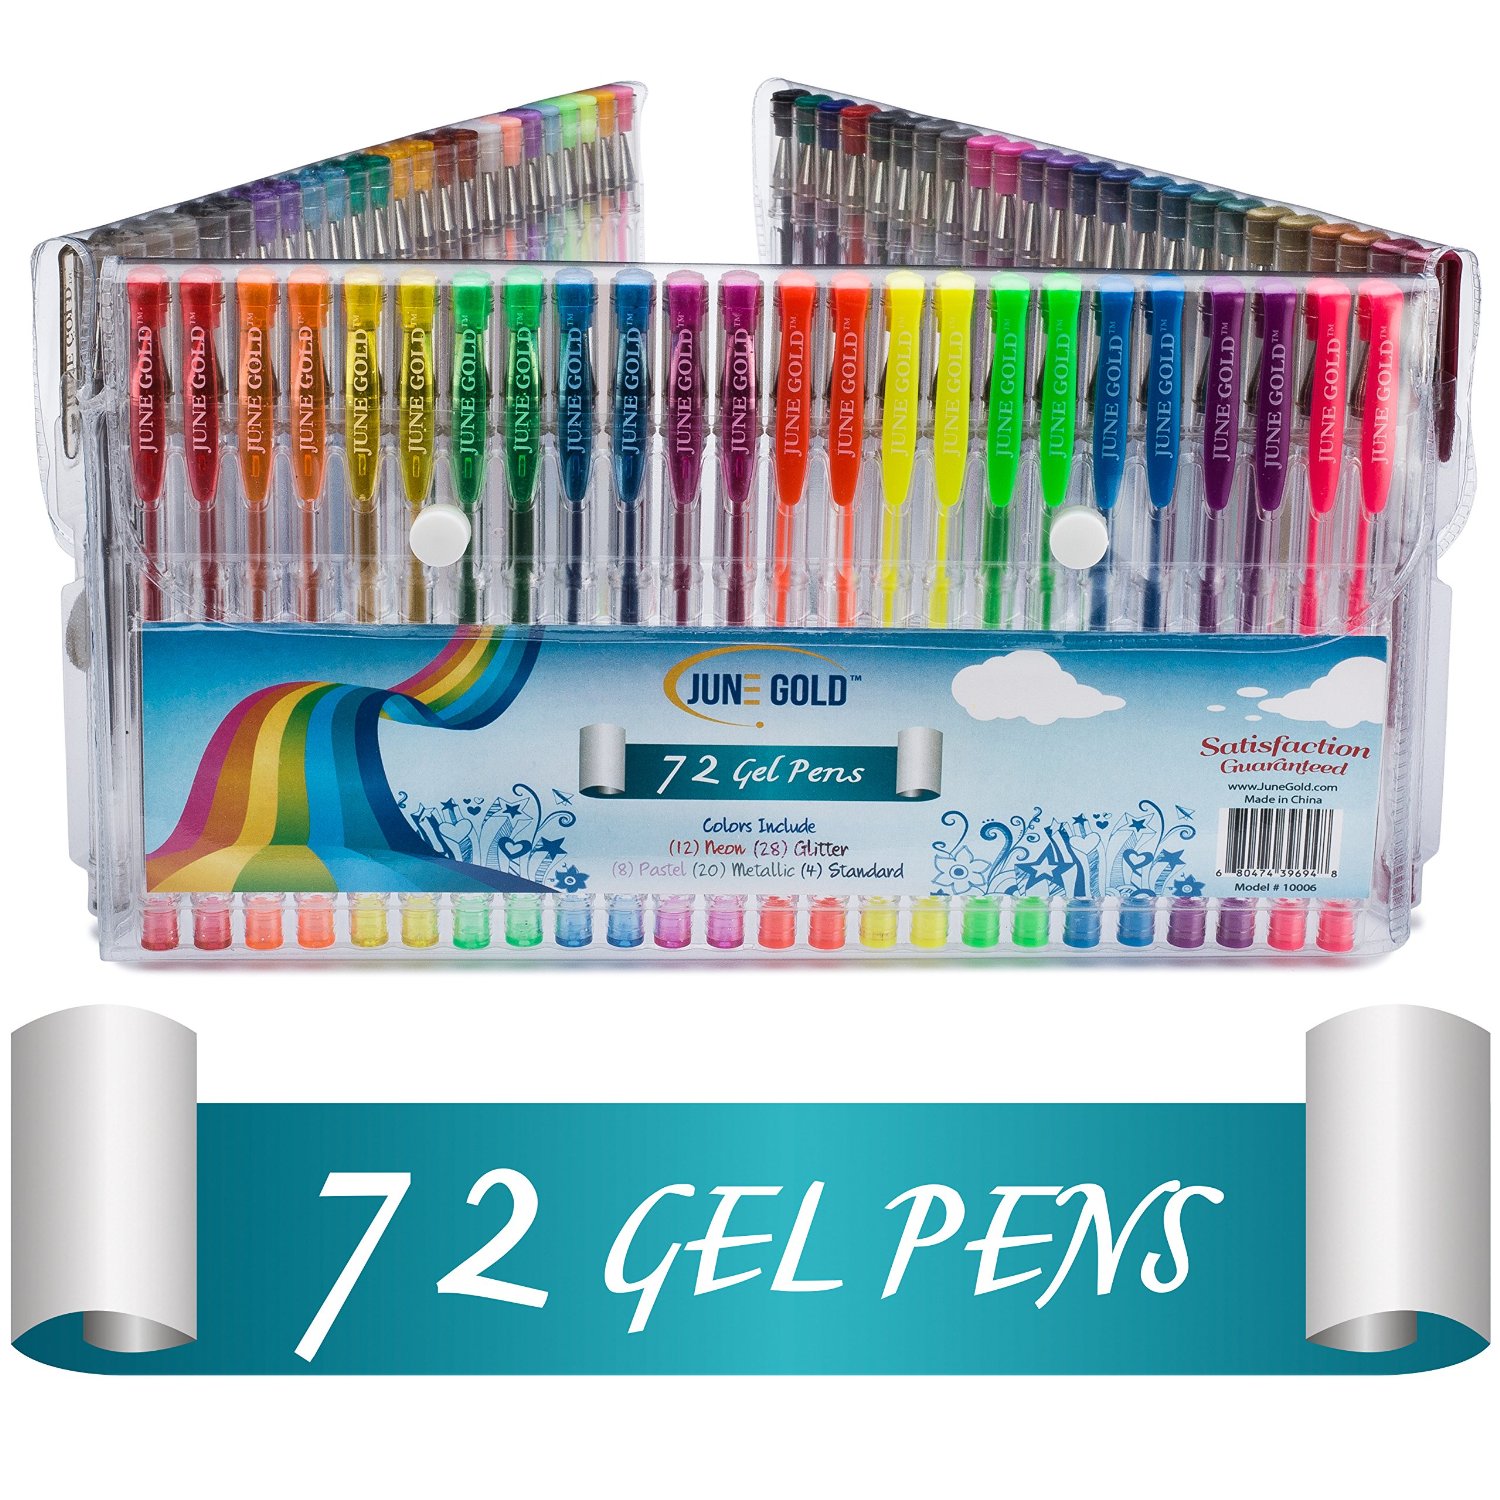 June Gold 72 Gel Pens – Just $9.99!